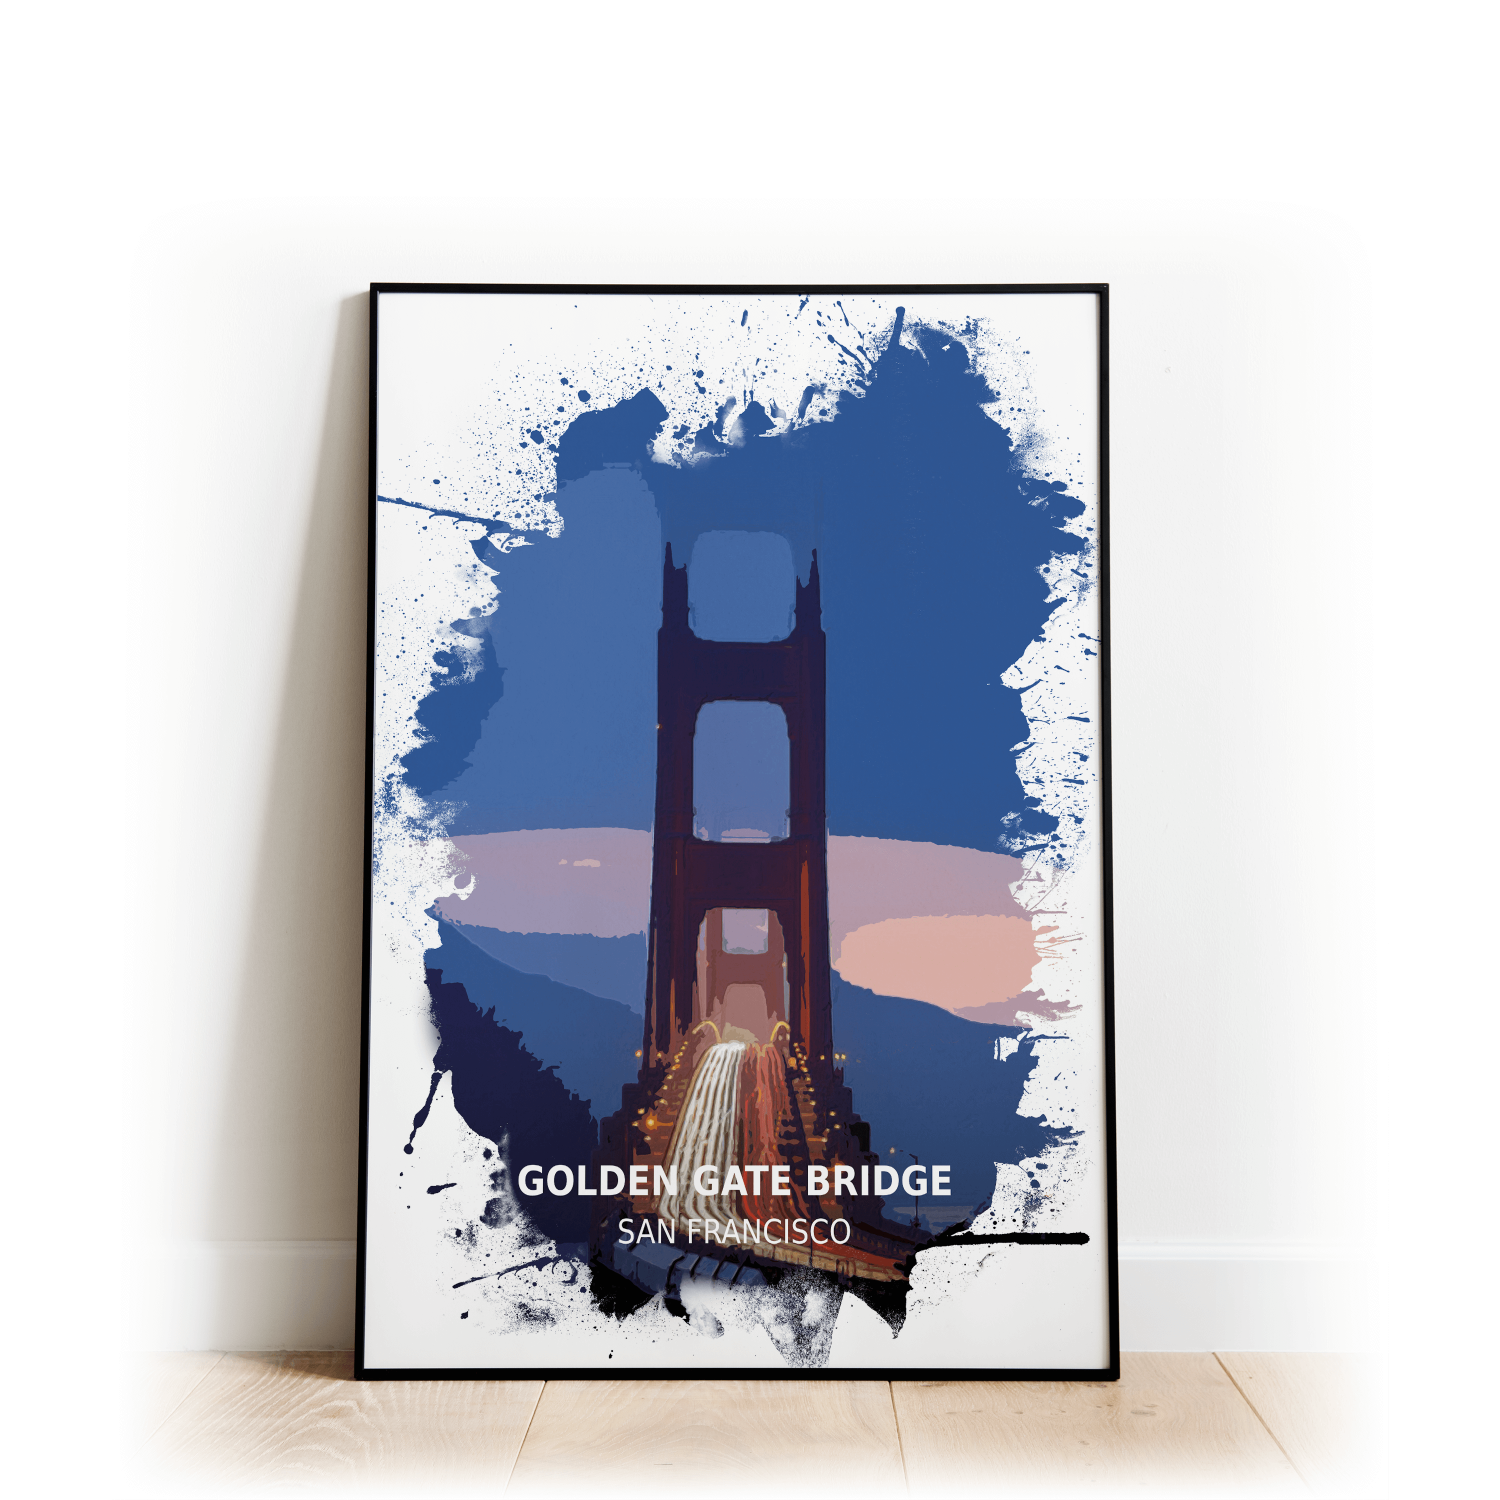 Golden Gate Bridge - San Francisco - Print - A4 - Standard - Print Only